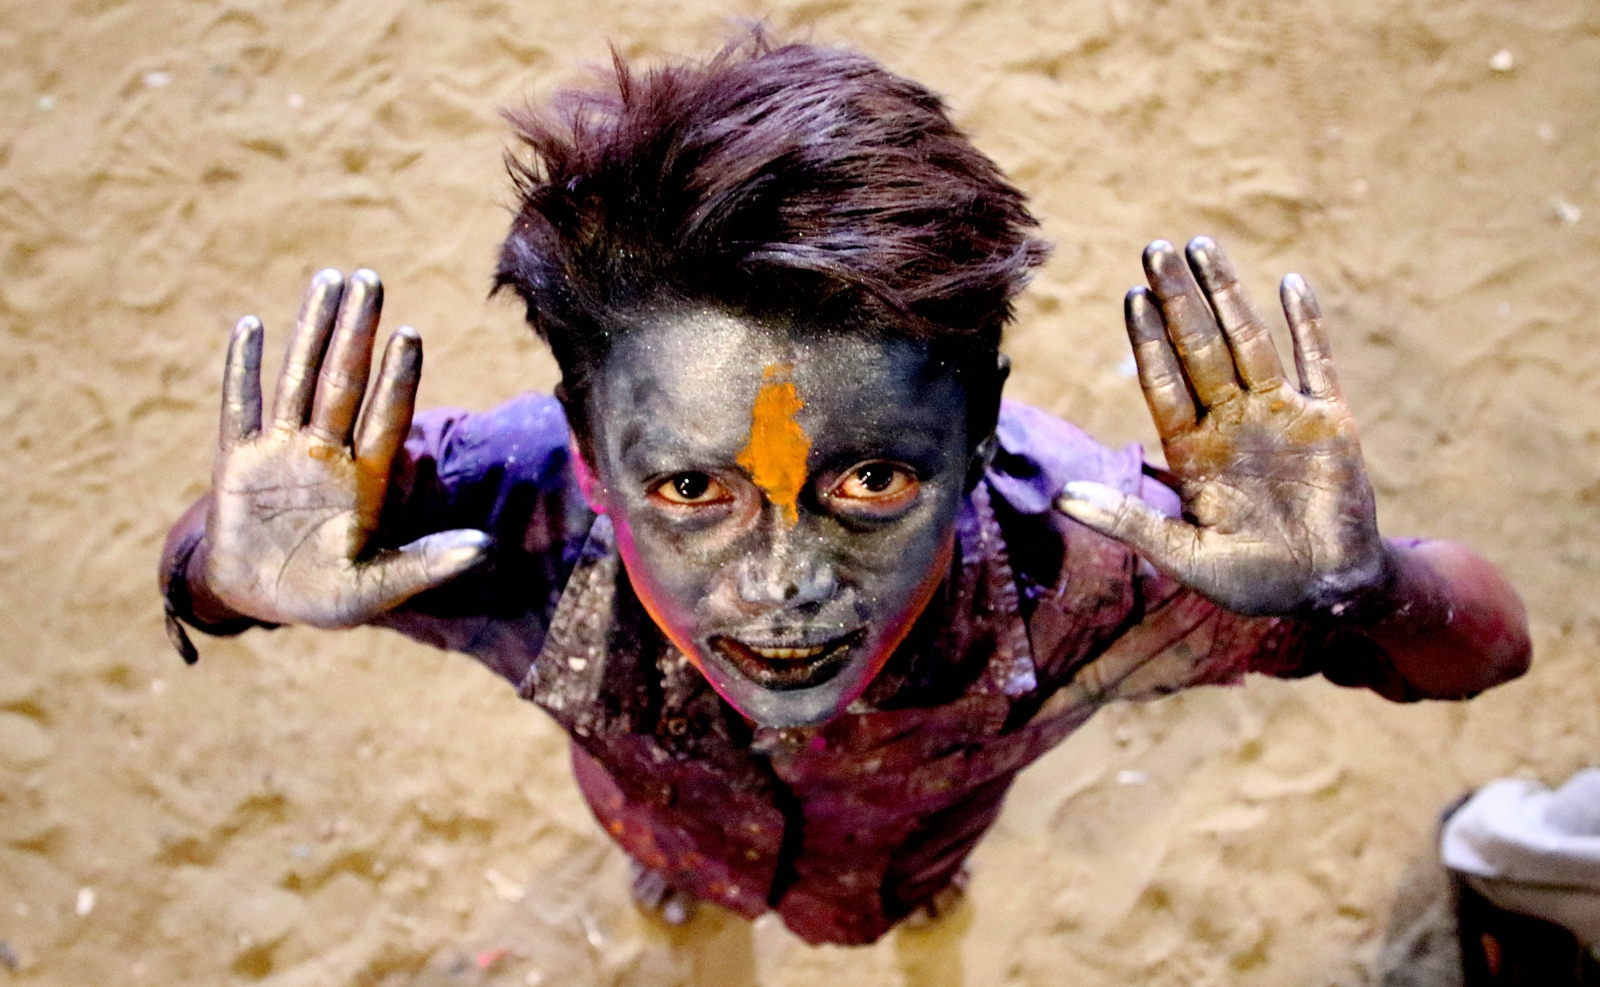 Wymalowany hinduski chłopiec w trakcie święta Holi w Karaczi, Pakistan.